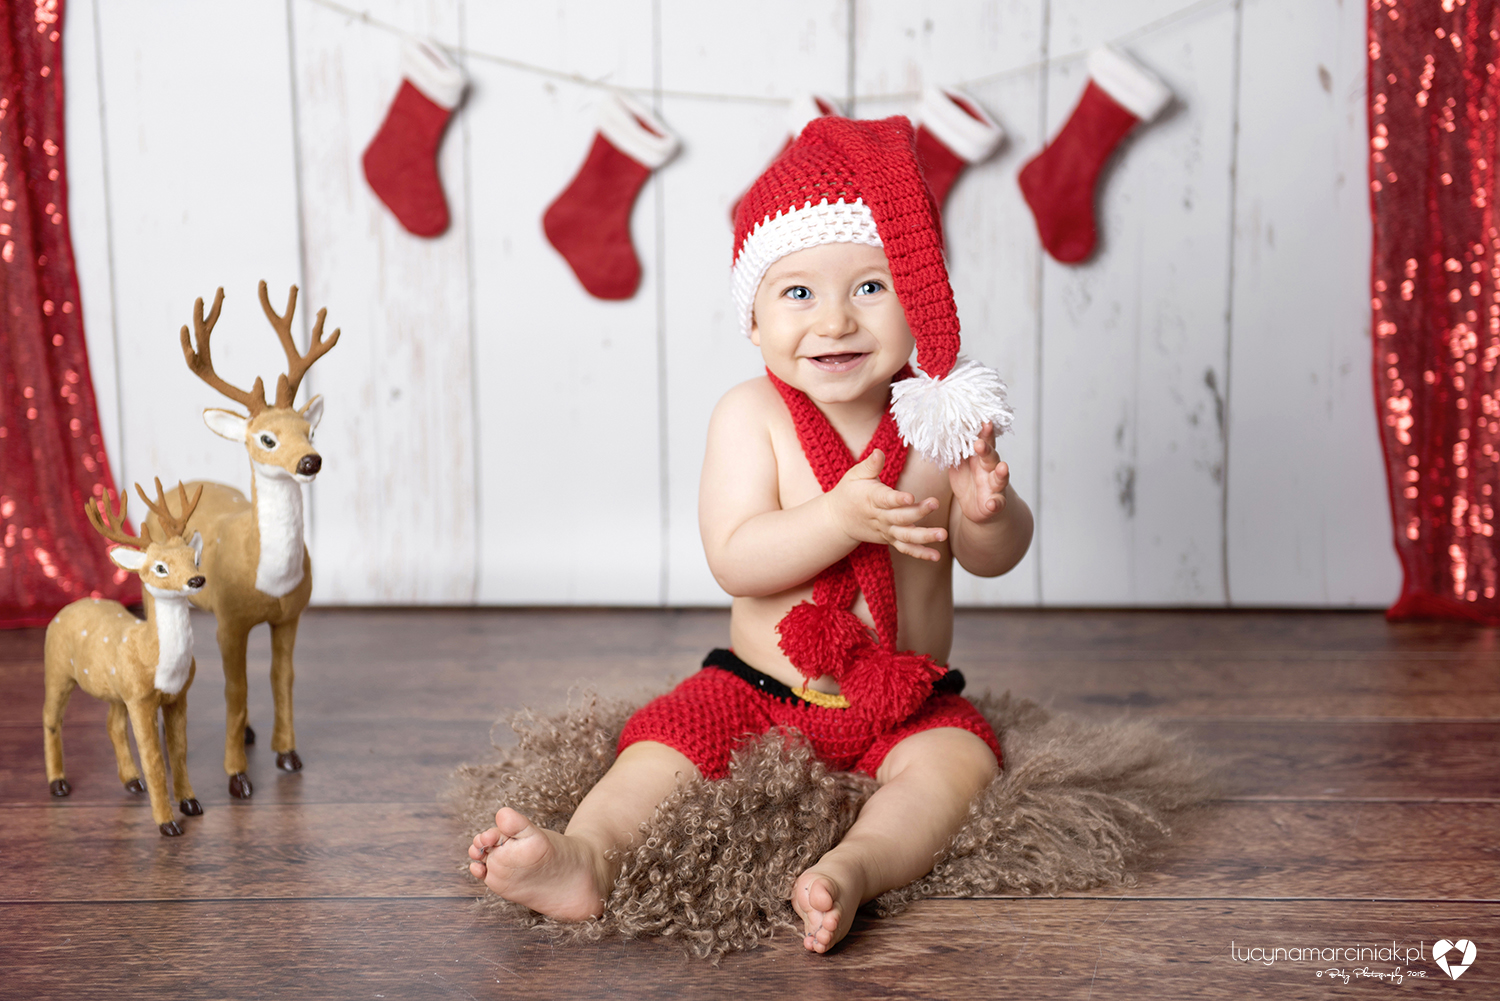 Mini sesje świąteczne : Fotografia dziecięca, noworodkowa